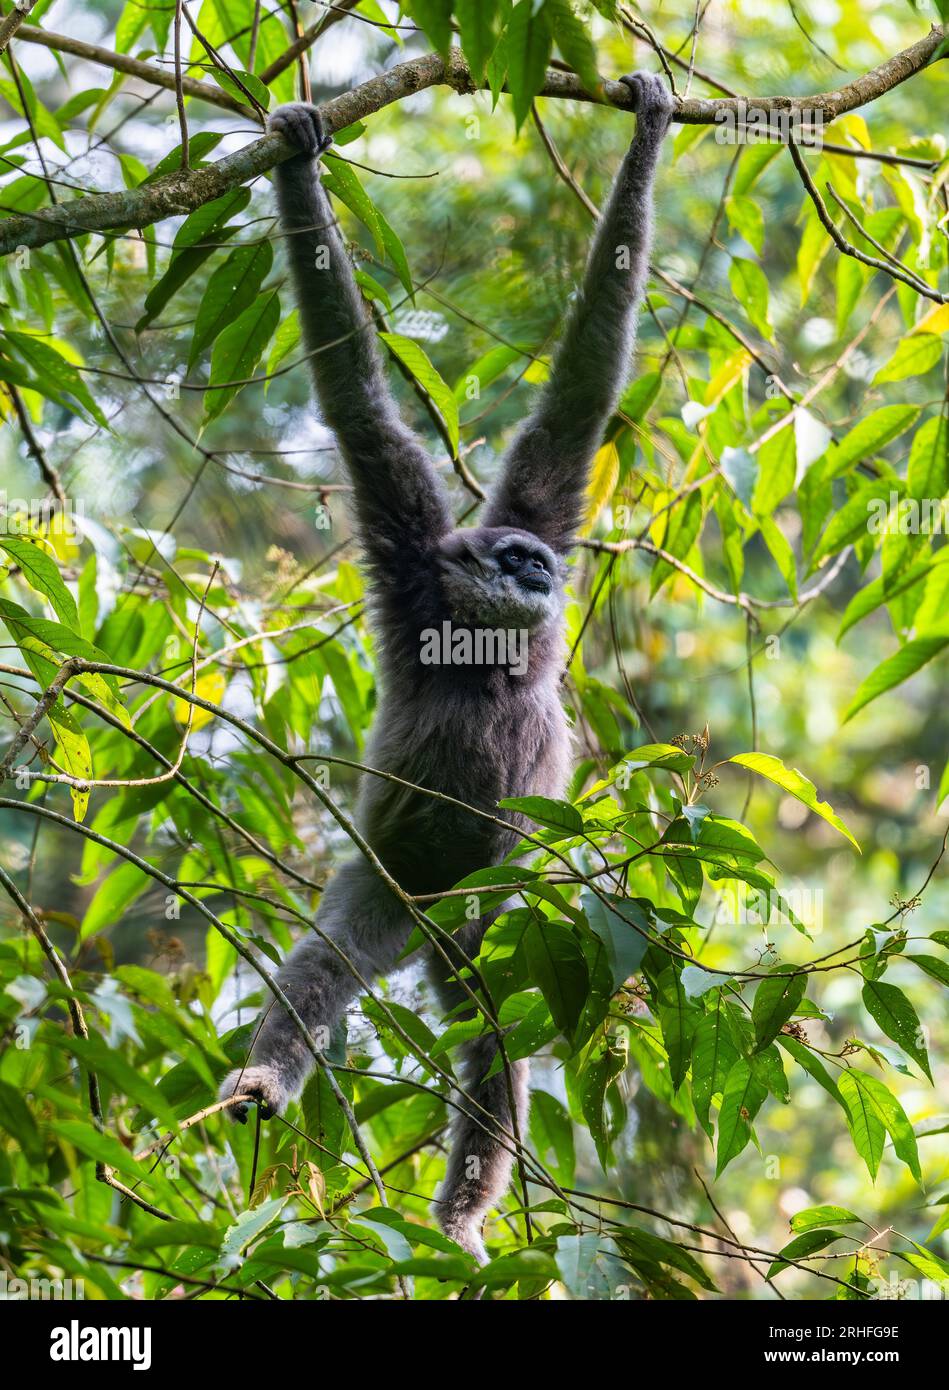 Ein gefährdeter Javan Gibbon (Hylobates moloch), der an einem Ast hängt. Java, Indonesien. Stockfoto